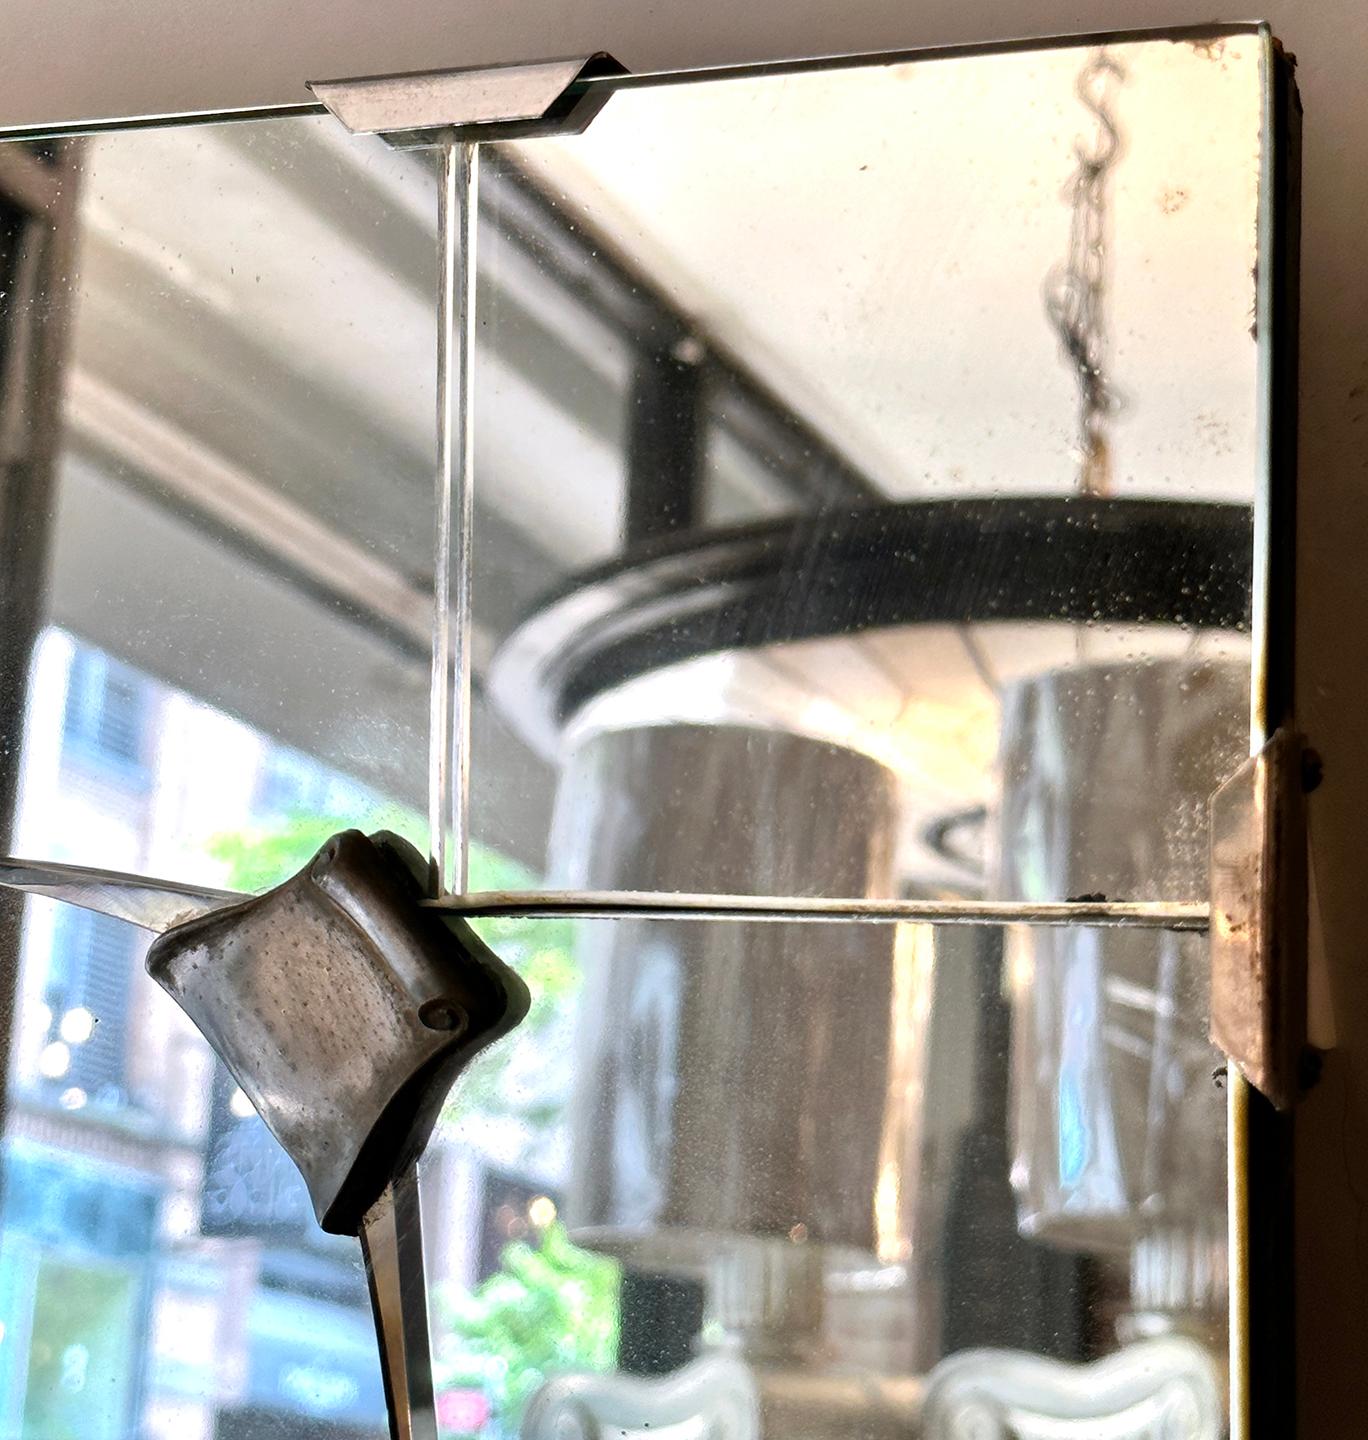 Miroir italien gravé à l'eau-forte, datant des années 1950, avec un motif de feuillage sur le cadre.

Mesures :
Hauteur : 60.5